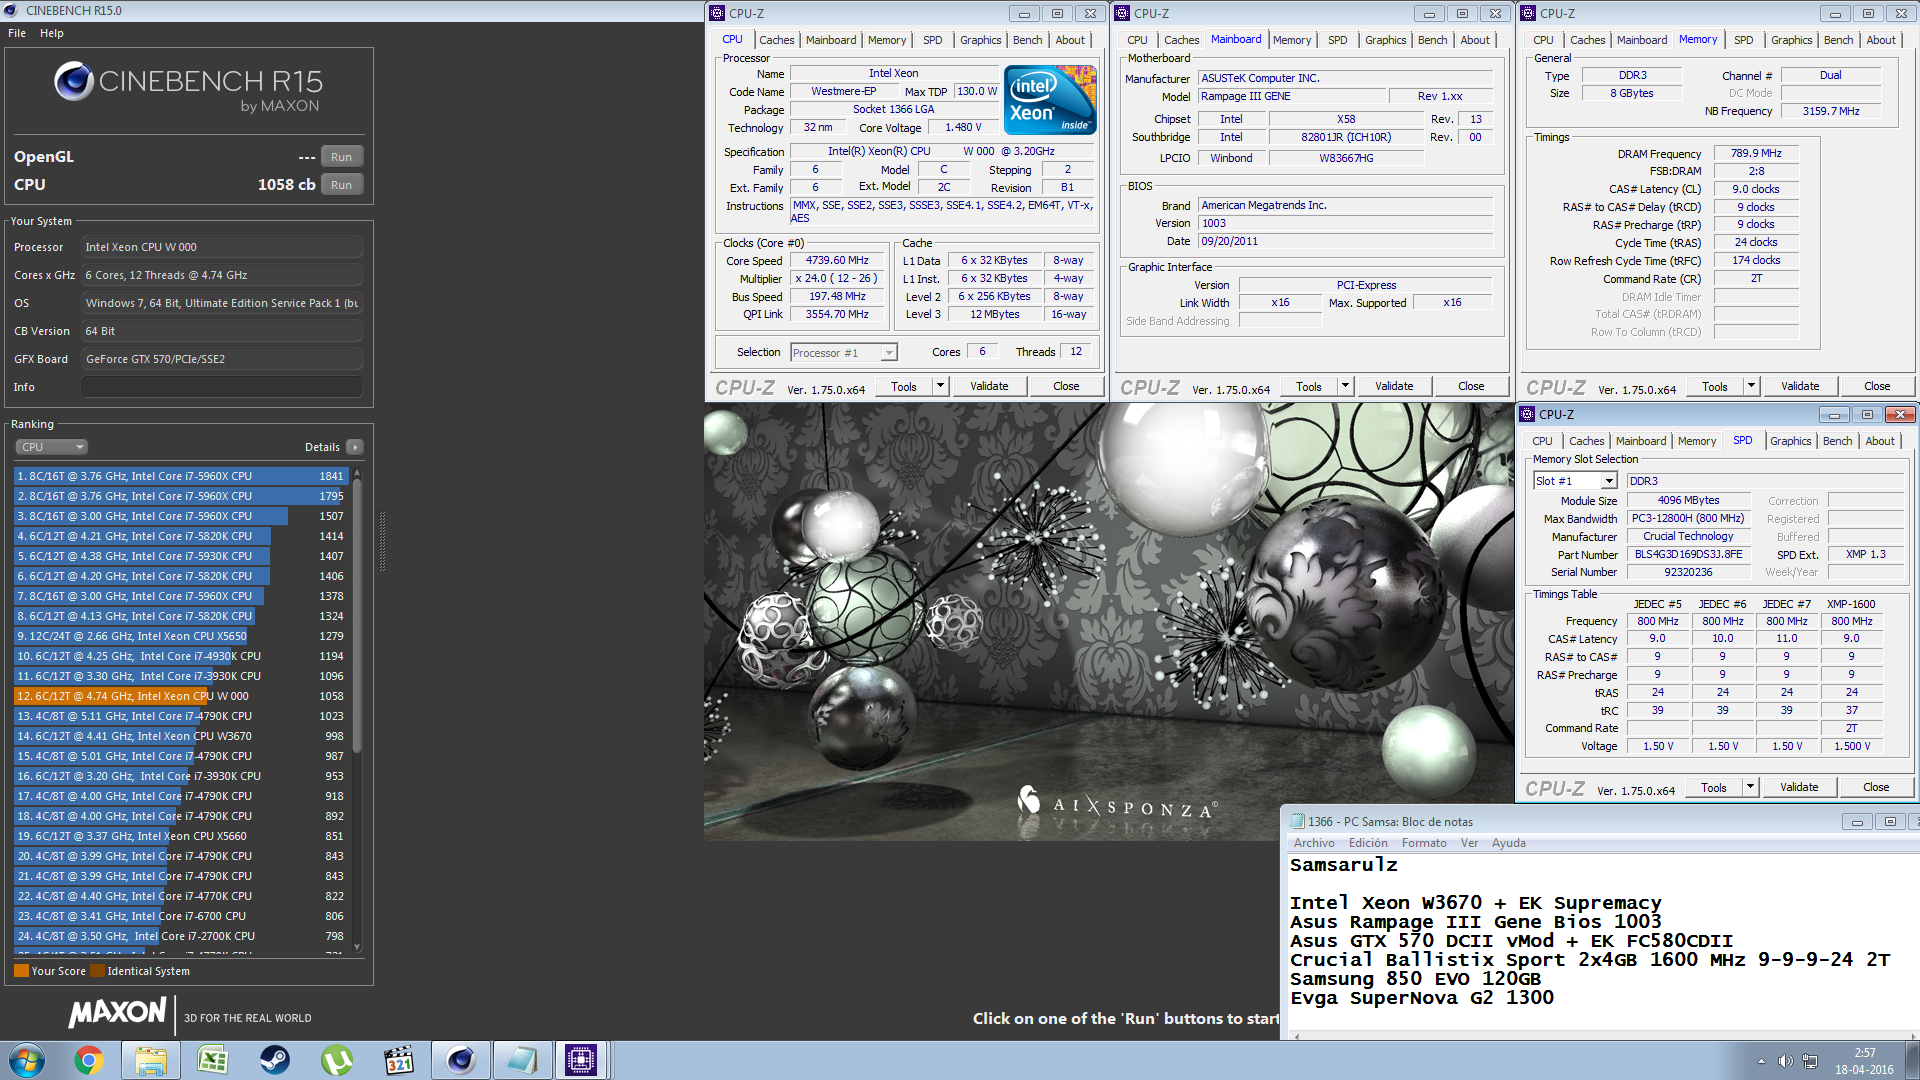 Samsarulz`s Cinebench - R15 score: 1058 cb with a Xeon W3670